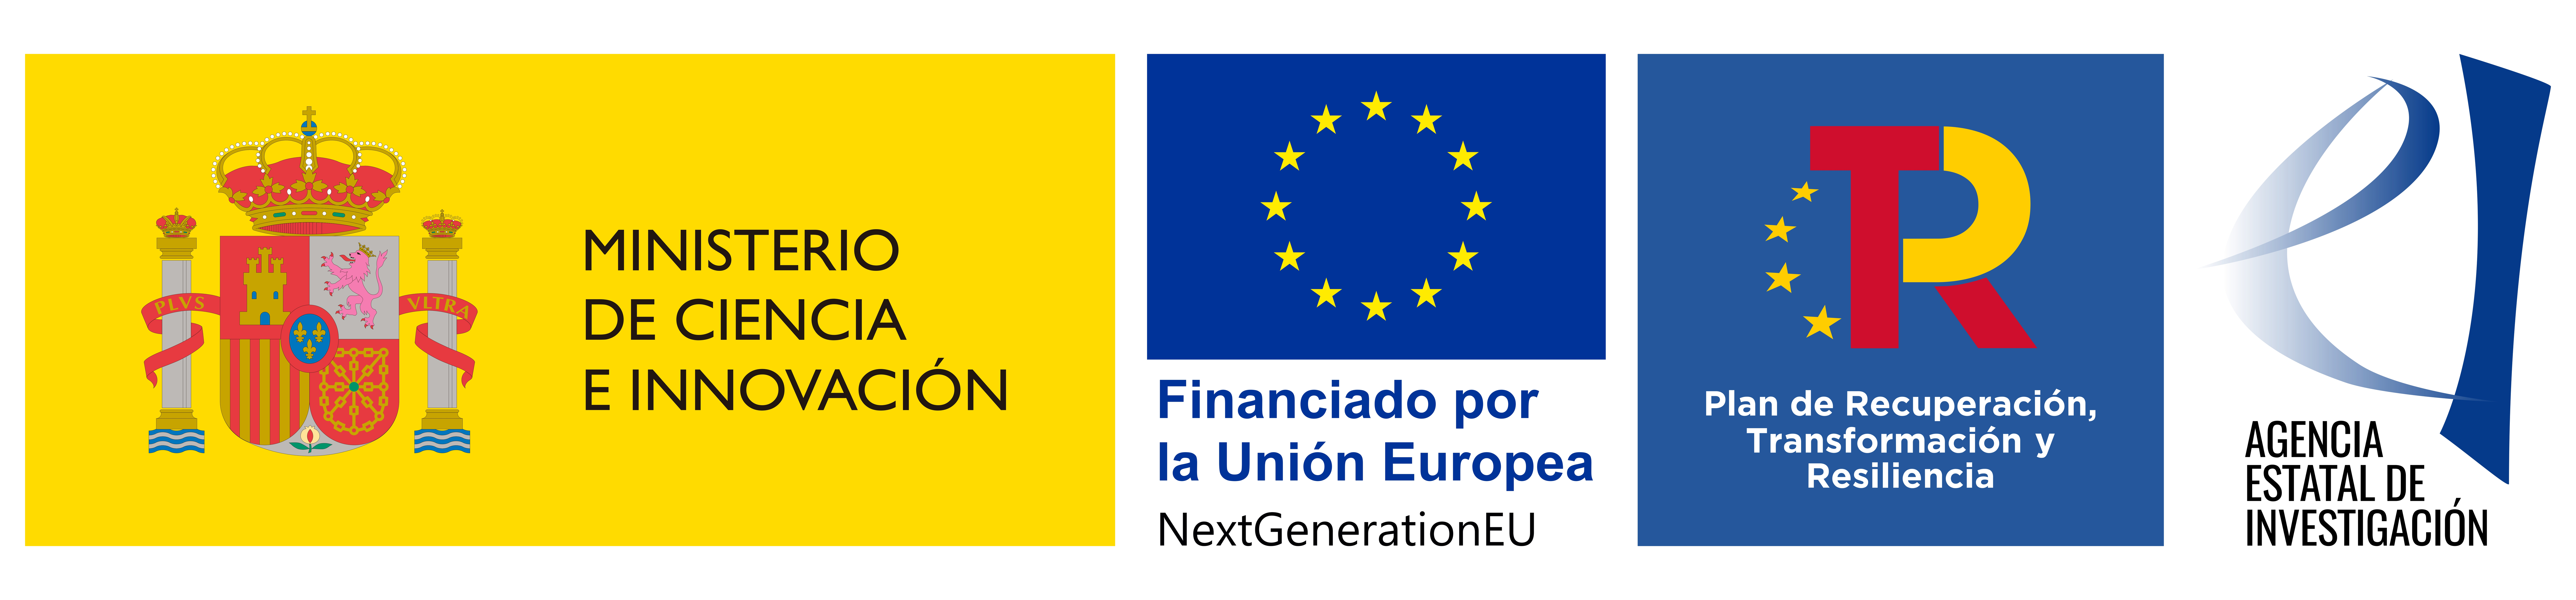 Financiado por la unión europea - Plan de recuperación, transformación y resiliencia